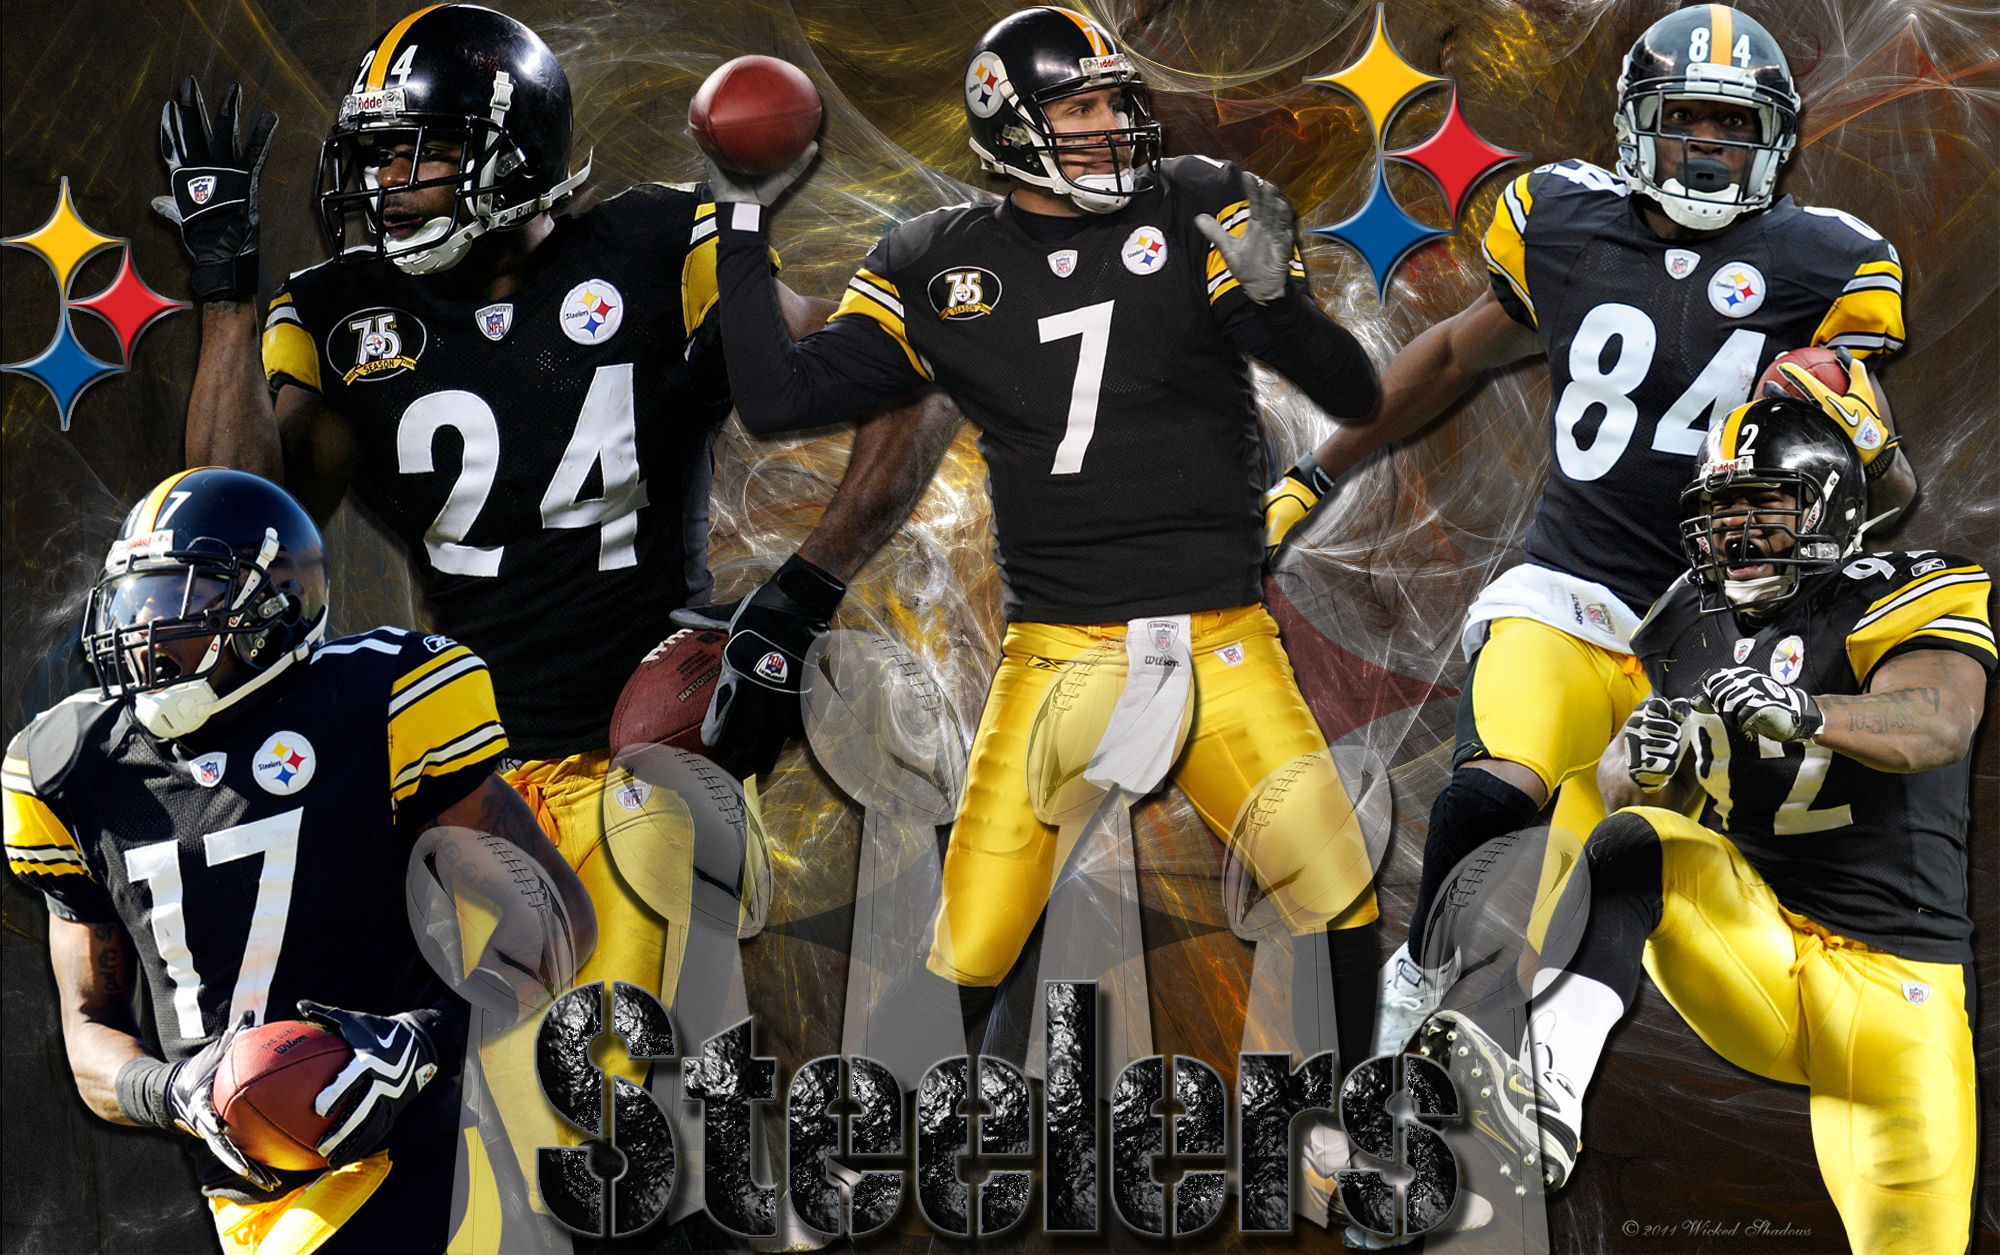 Steelers Wallpaper HD Desktop